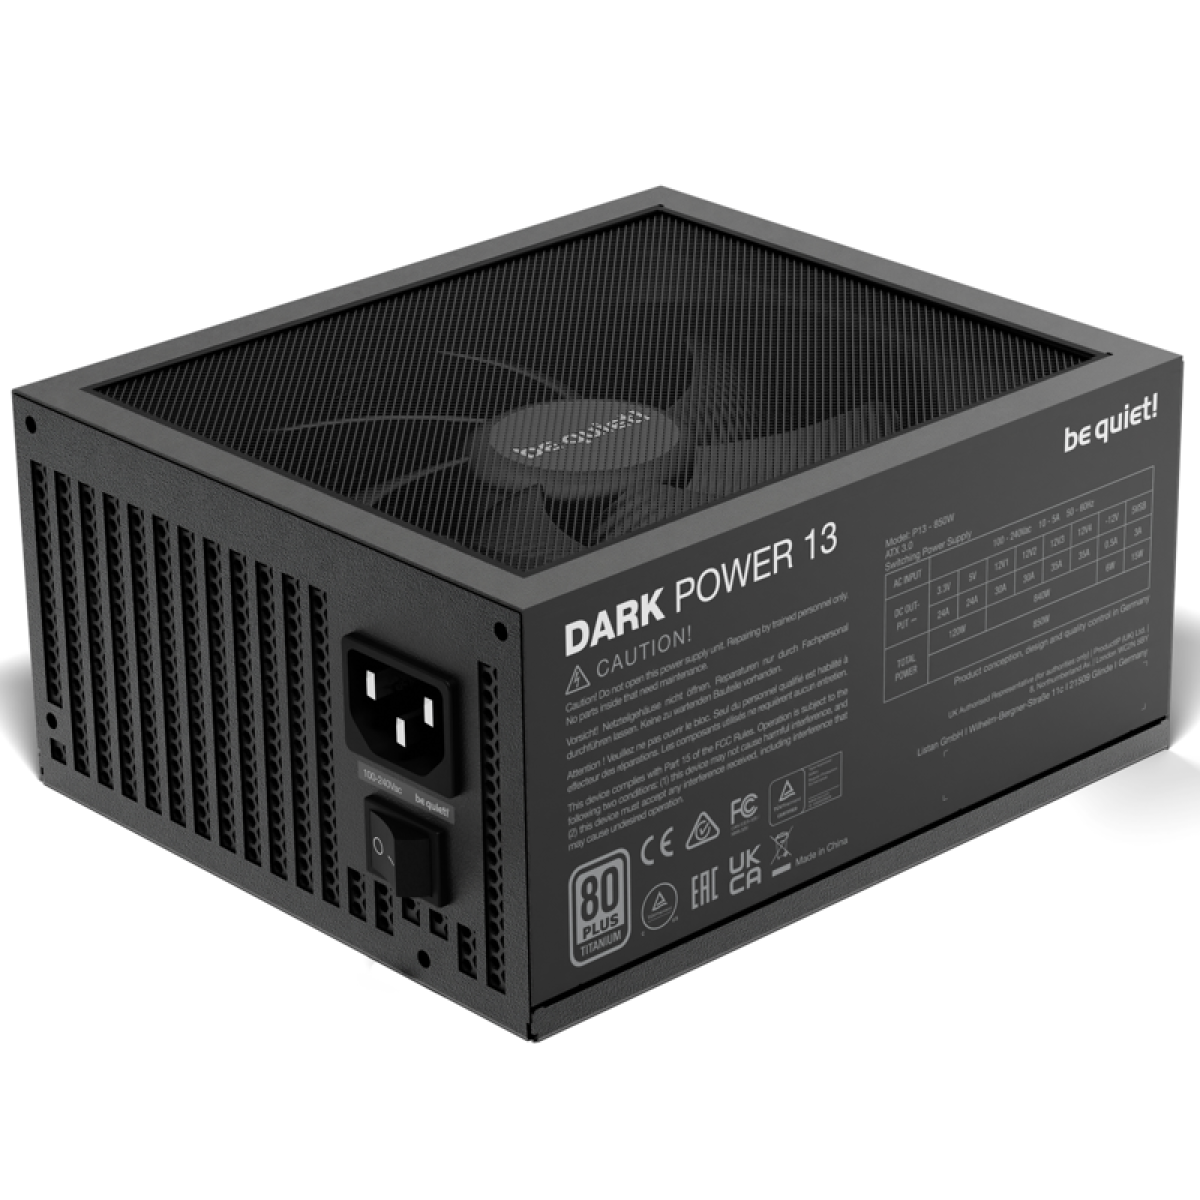 Dark Power 13 - 1000 Watt